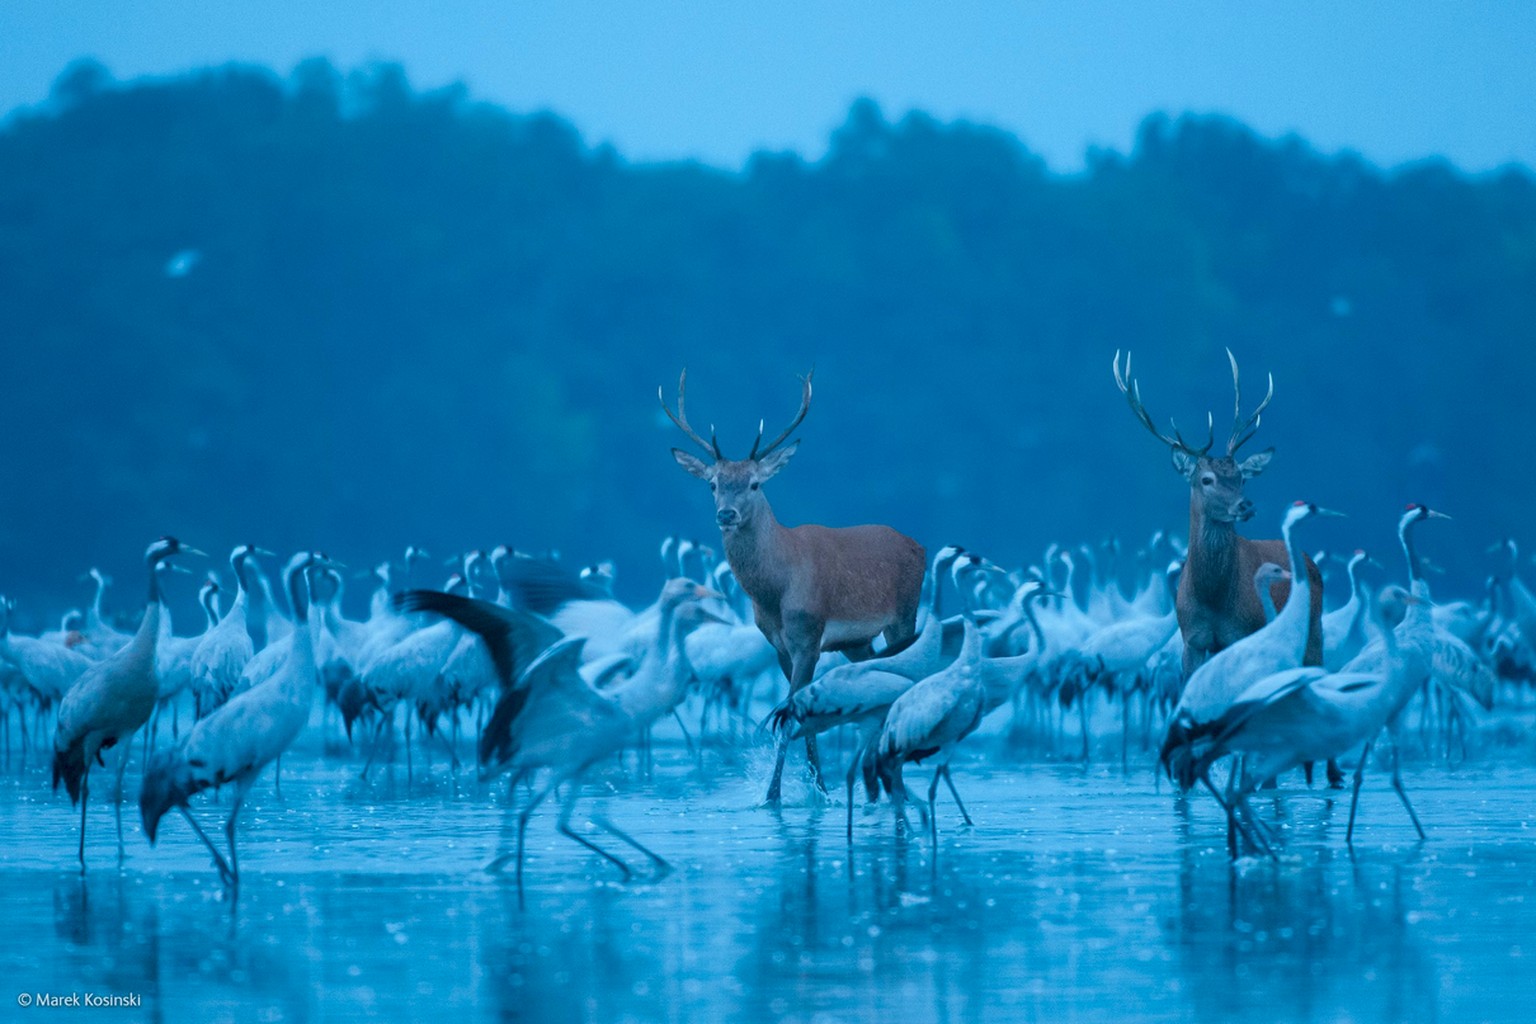 «Red deer and cranes» («Rothirsche und Kraniche»)